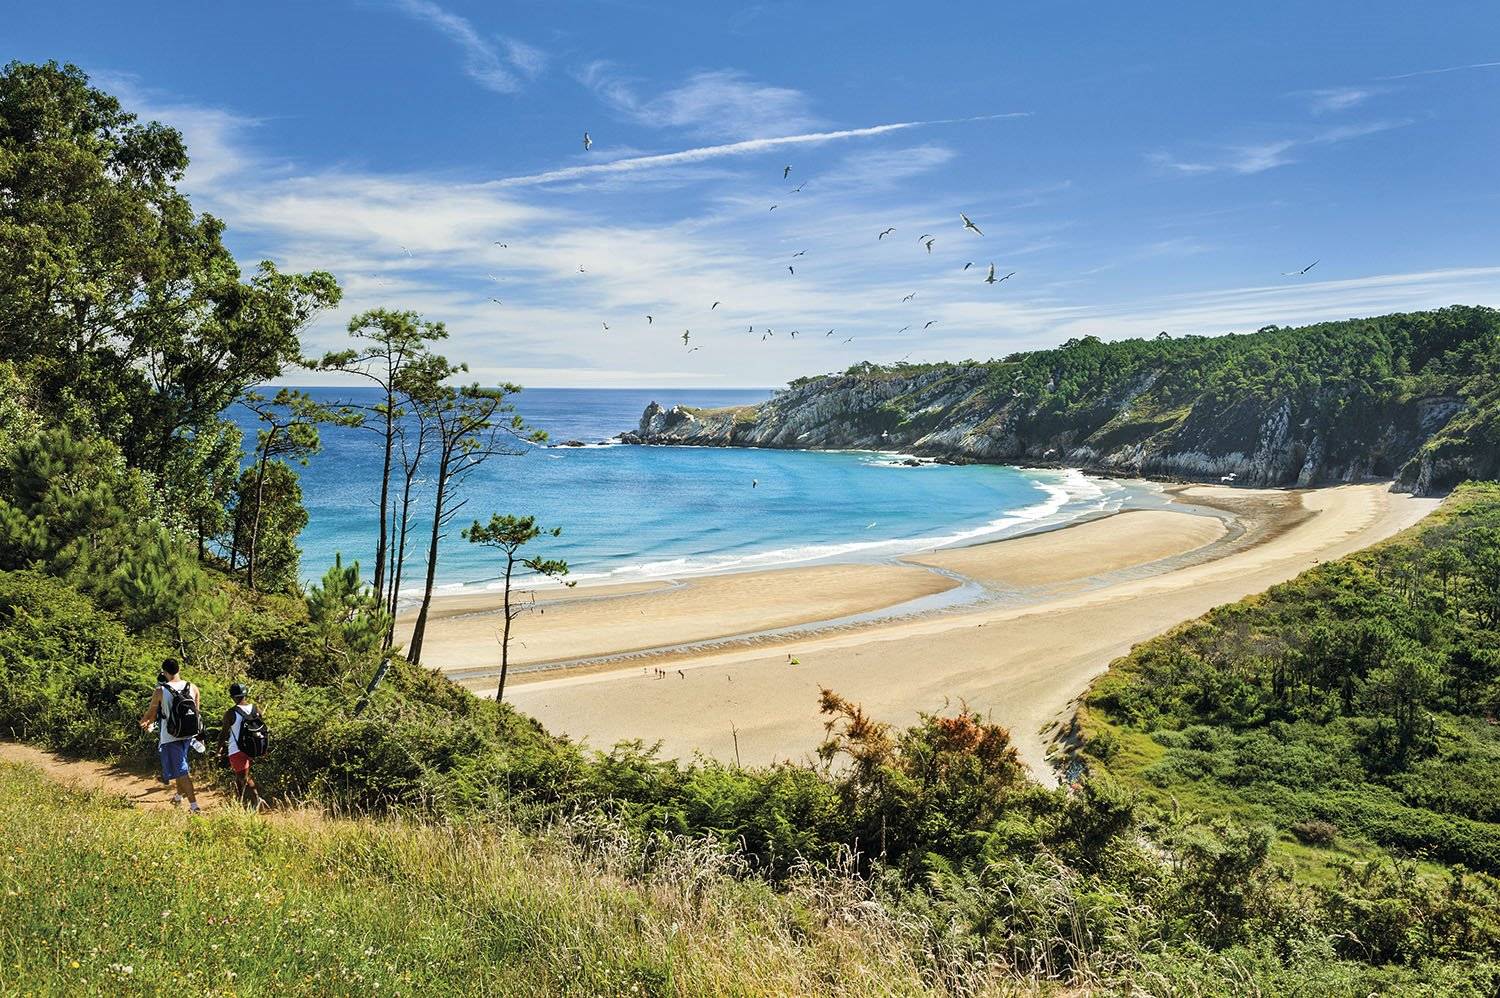 Лучшие пляжи испании: самые красивые места для отдыха